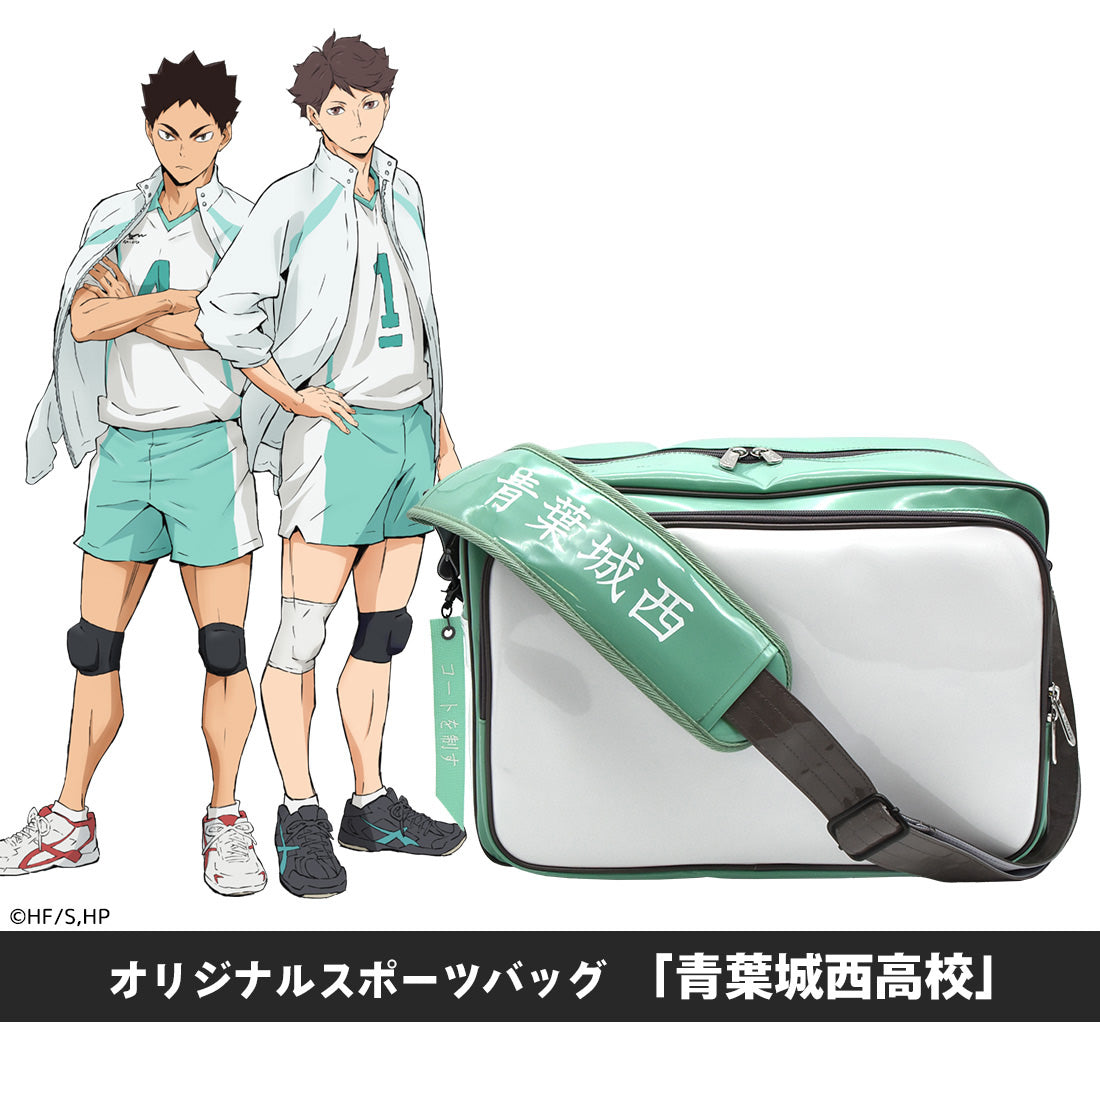 ハイキュー!!』オリジナルスポーツバッグ「青葉城西高校」 – Anime 